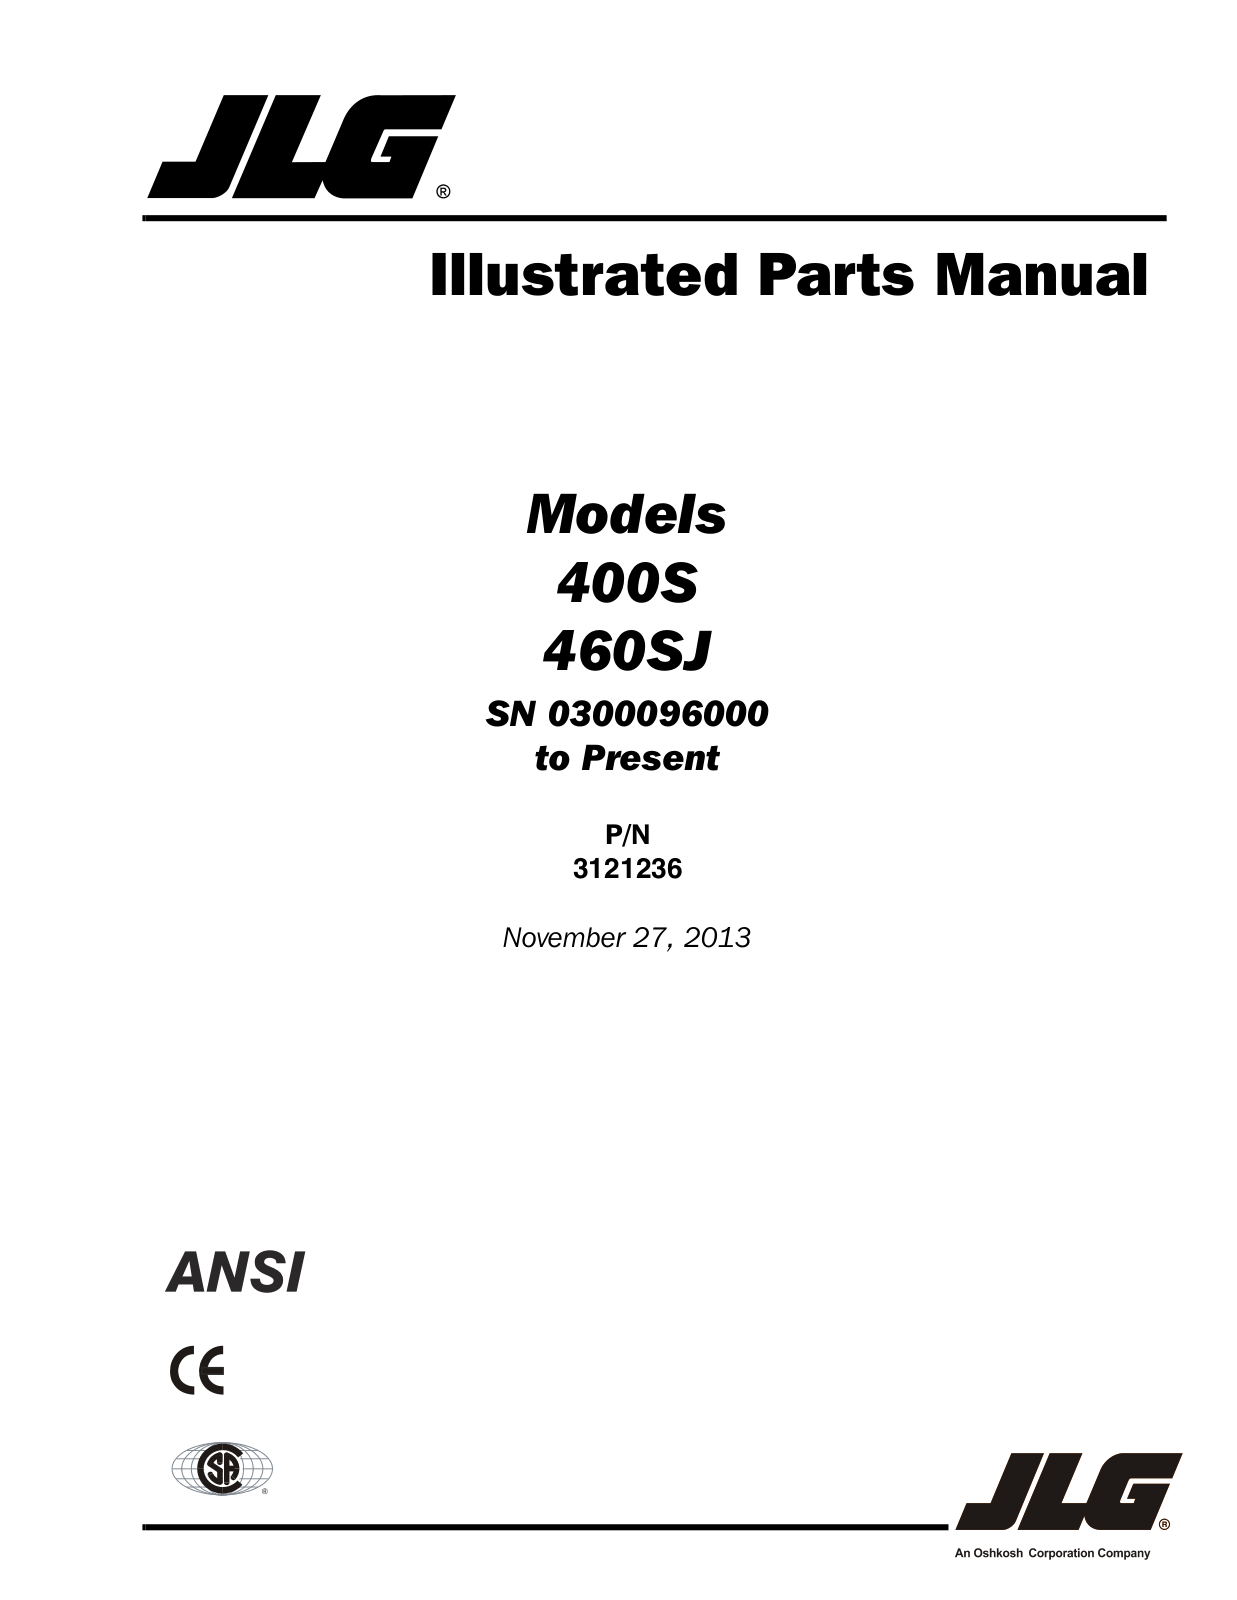 JLG 460SJ Parts Manual